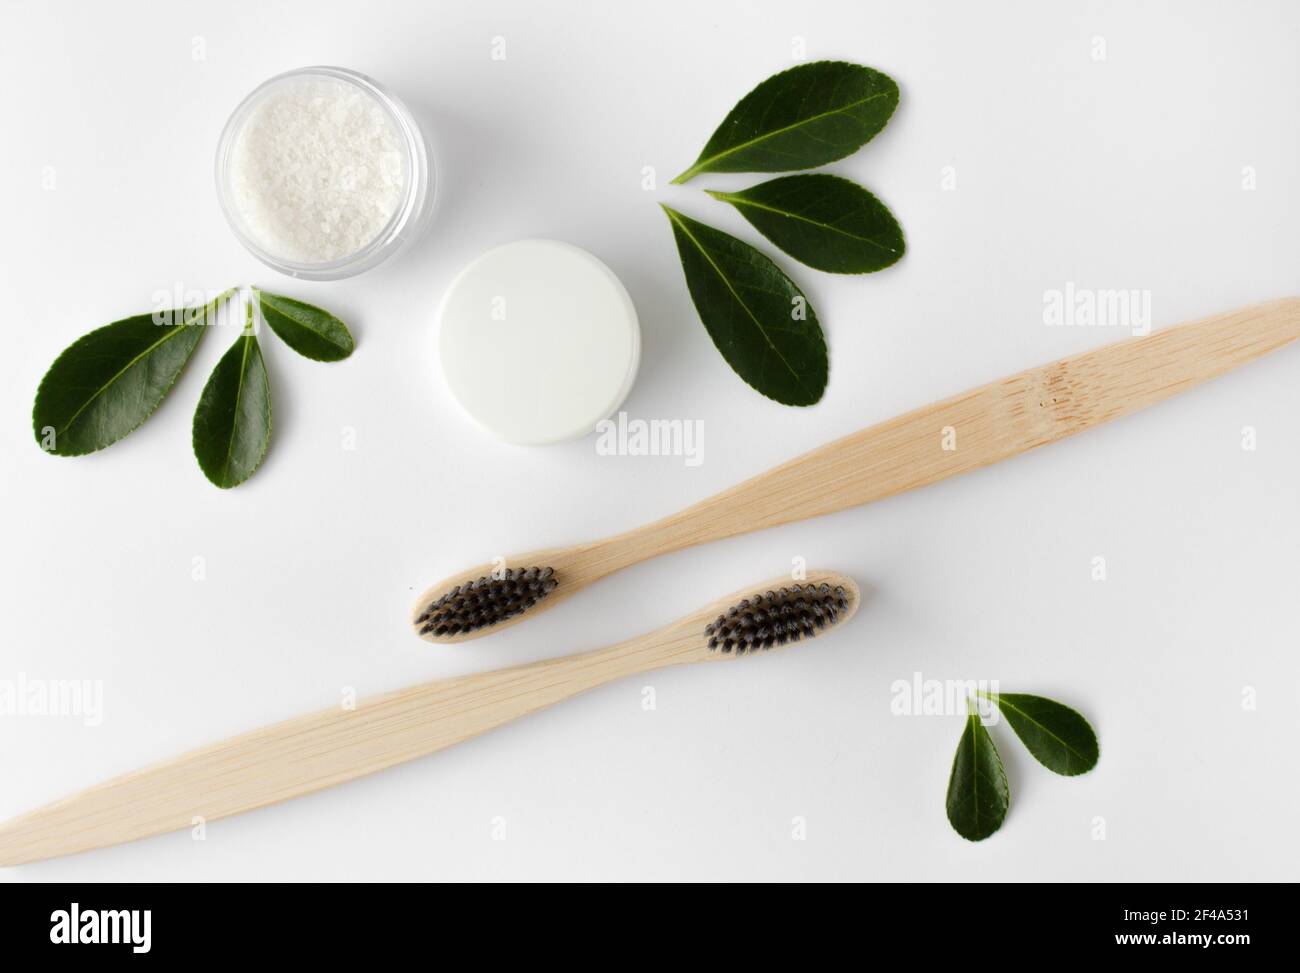 deux brosses à dents écologiques en bambou en bois, dentifrice et feuilles vertes sur fond blanc. Banque D'Images